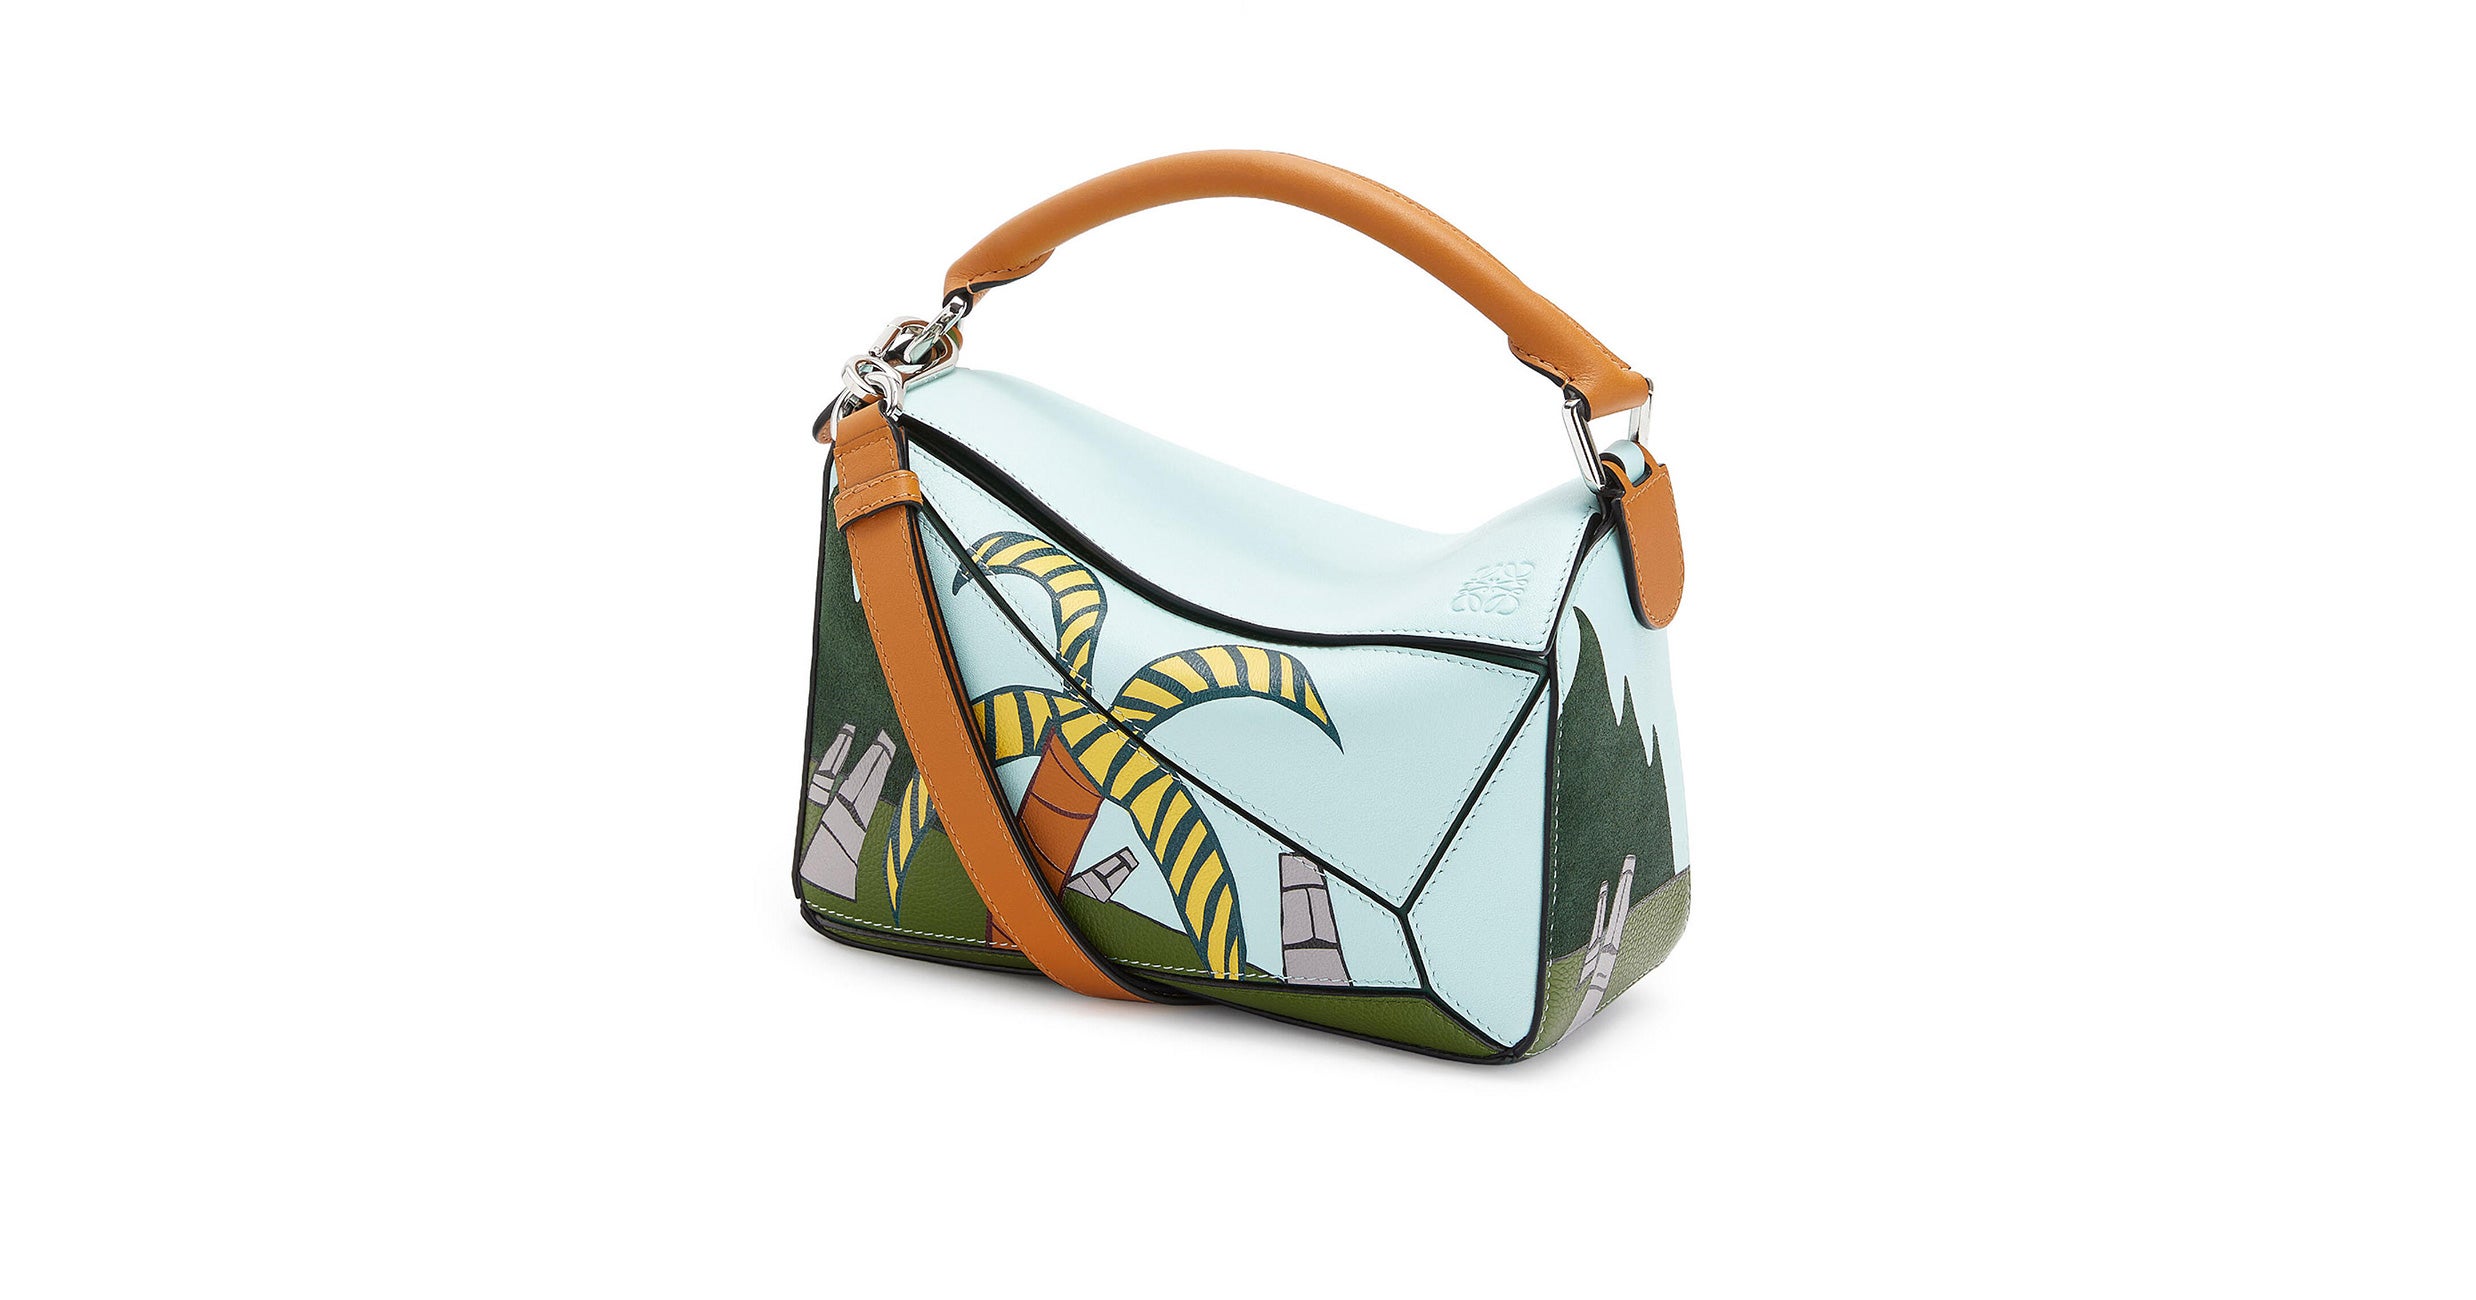 Collectible Designer Bags 2021: Gucci, Prada, LV